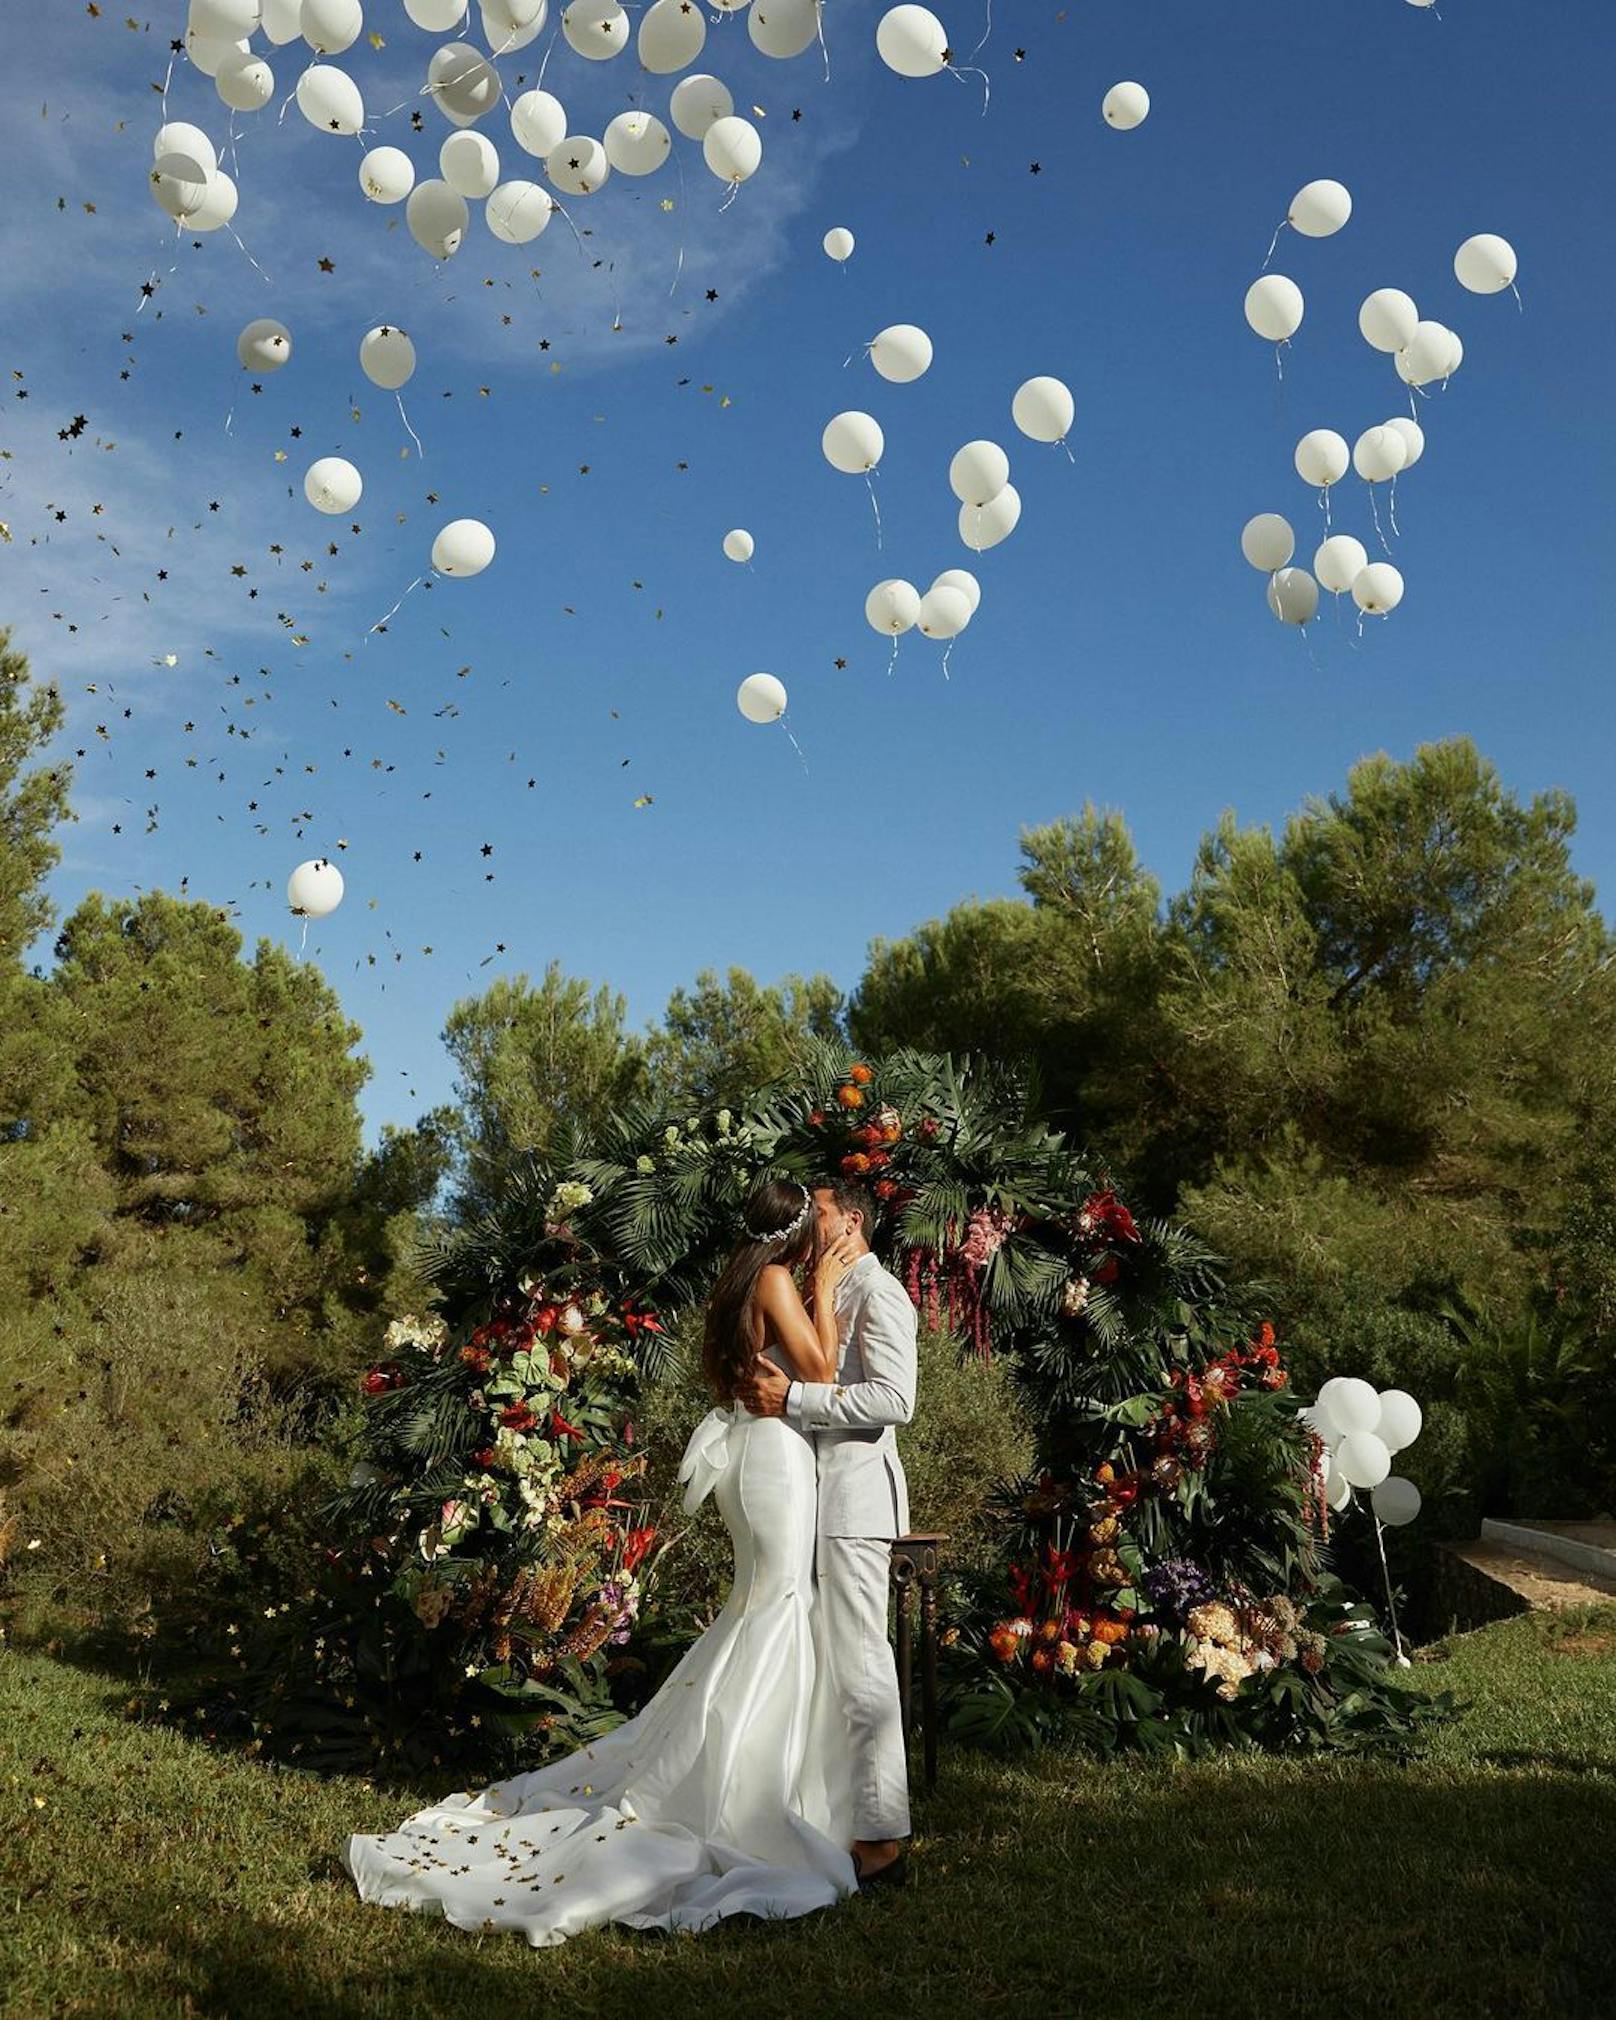 Mit einem Foto auf Instagram hat Schauspieler Elyas M'Barek 2022 seine Hochzeit mit seiner Freundin Jessica Riso öffentlich gemacht.